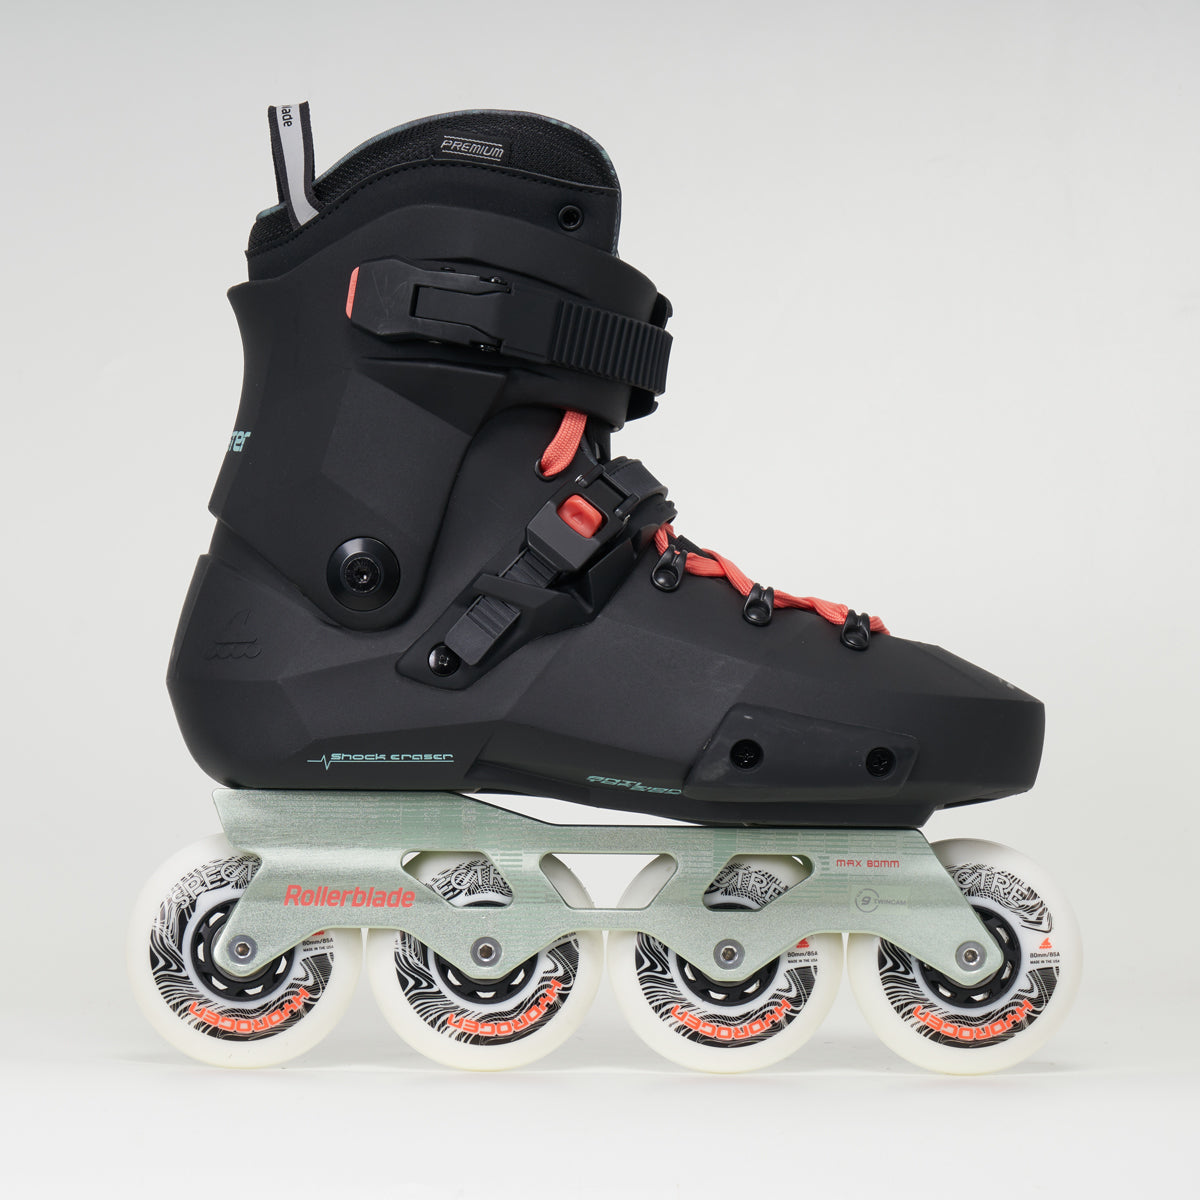 Rollerblade Twister XT W Skates - Black/Mint